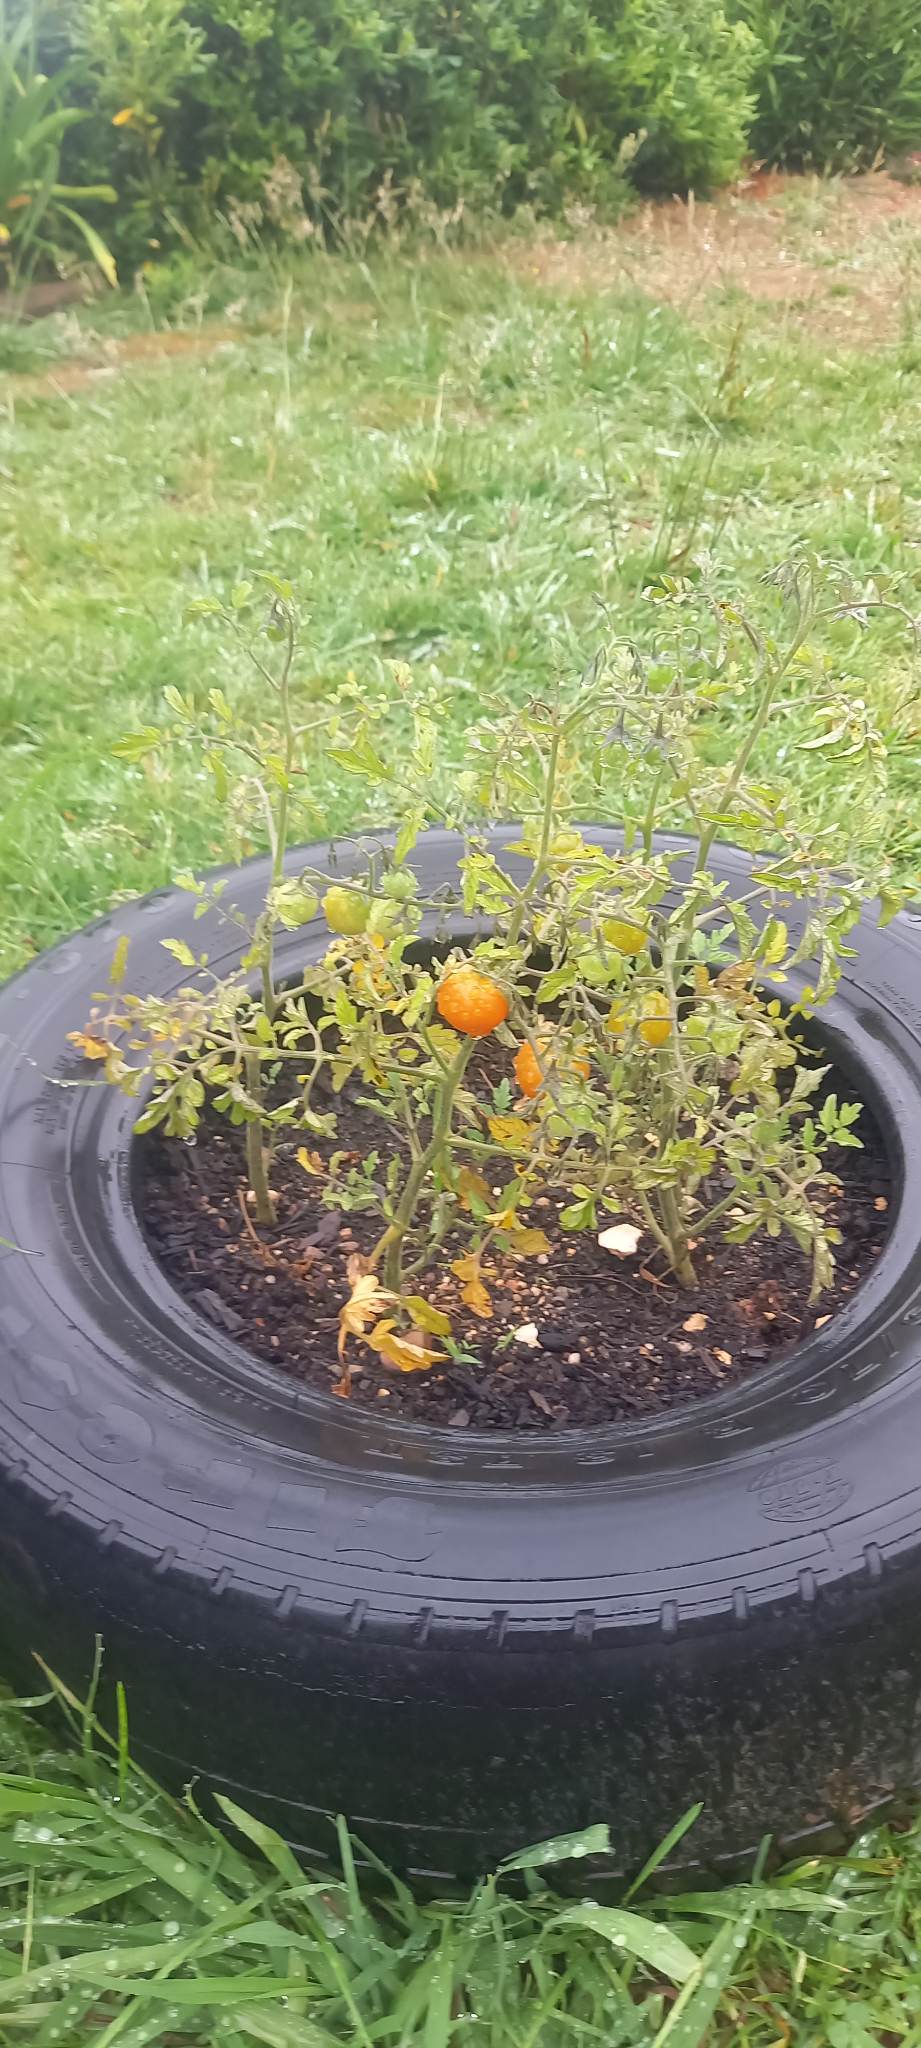 Os tomatinhos já estão a ficar cor-de-laranja. Estão a amadurecer!...